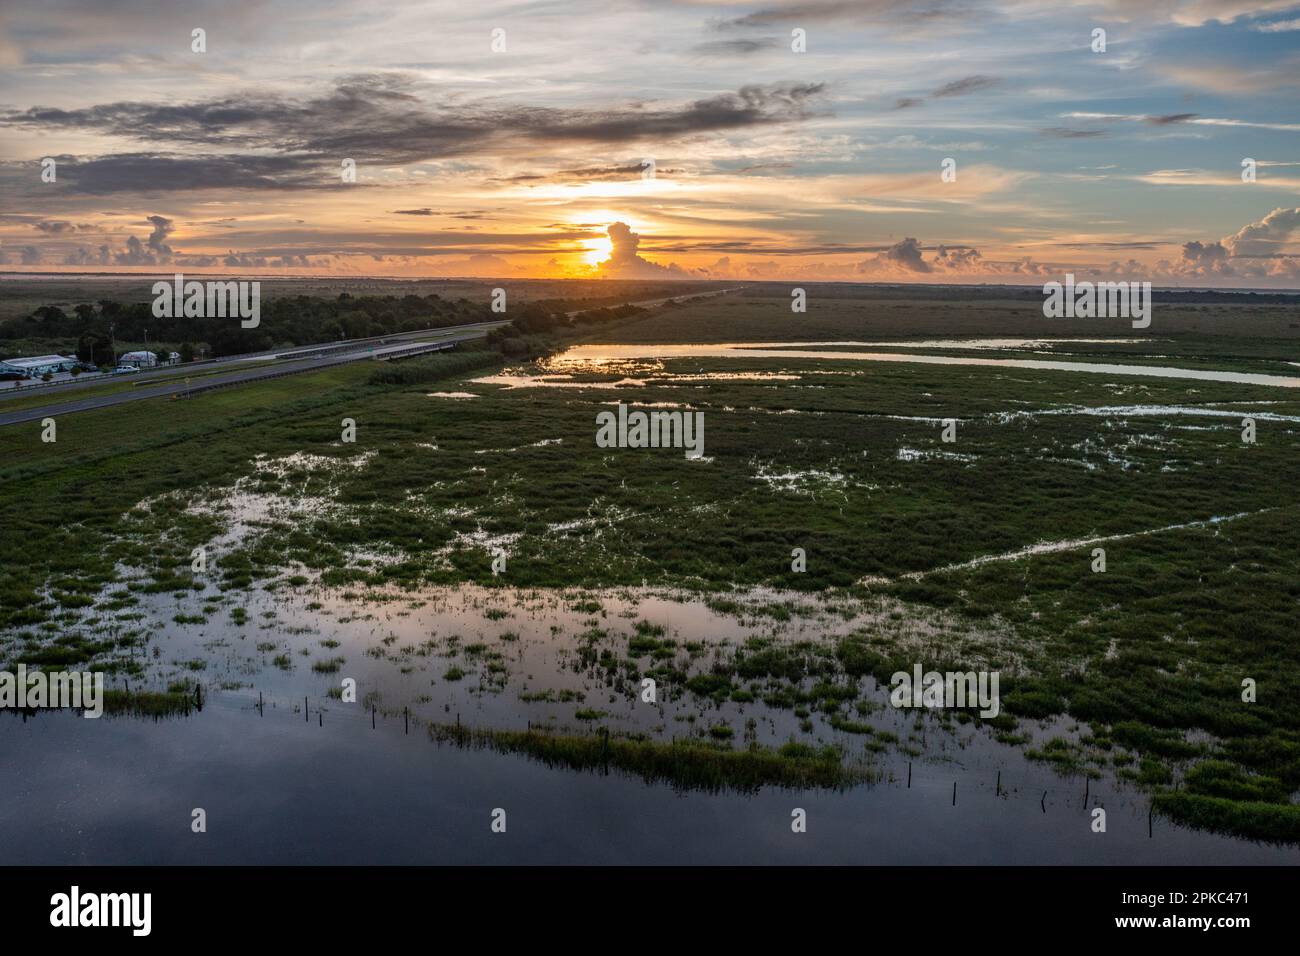 Immagine aerea dell'orizzonte con un tramonto sopra la verde palude in Florida Foto Stock